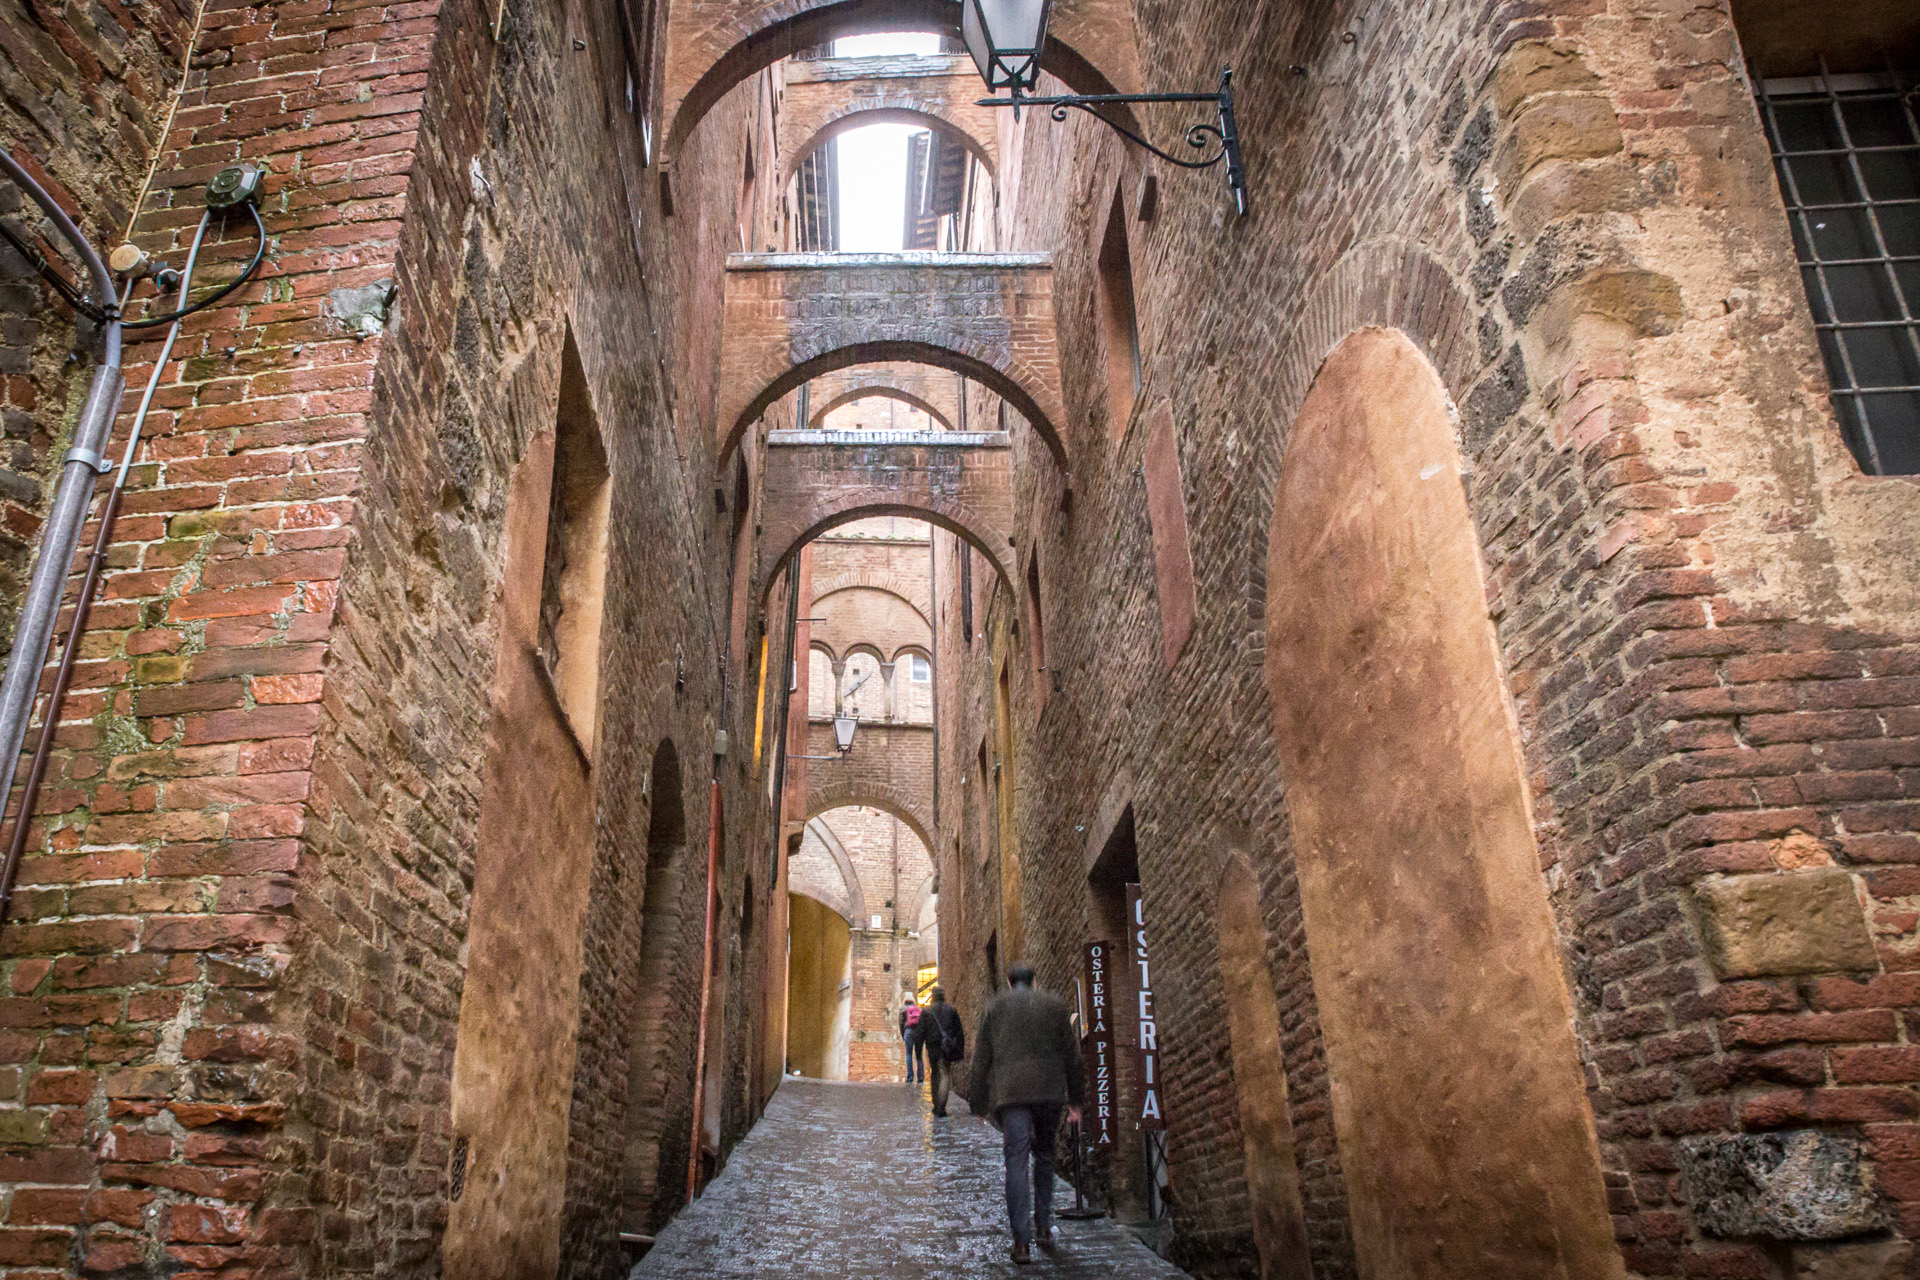 Strolling in Siena